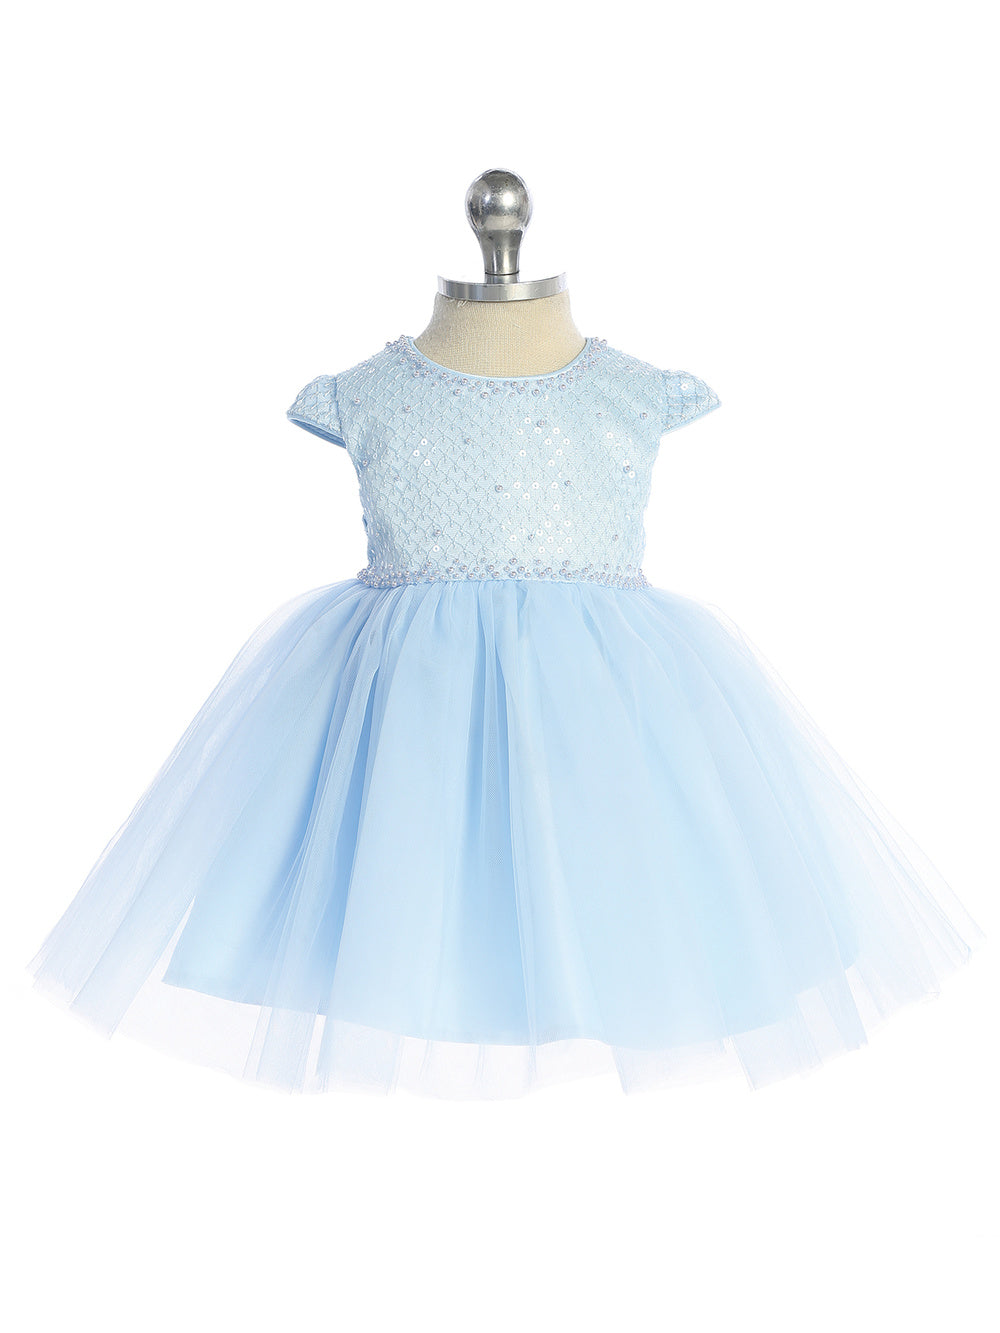 Infant Criss Cross Sequin Bodice/Tulle Skirt Dress